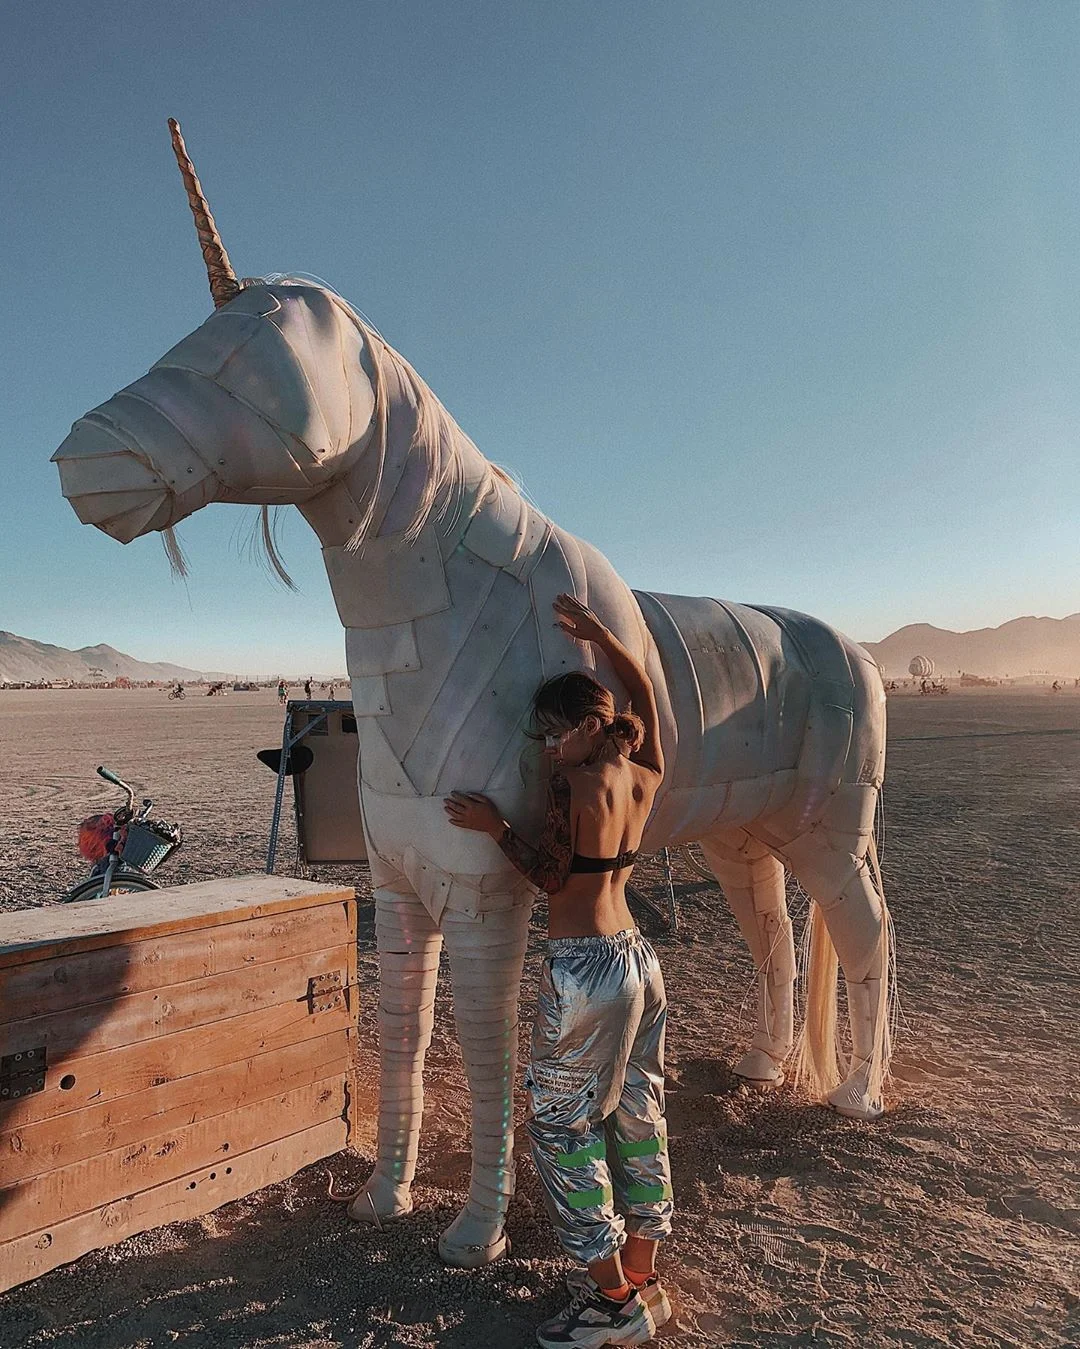 Нереальной красоты скульптуры и голые тела на фестивале Burning Man 2019 - фото 448410